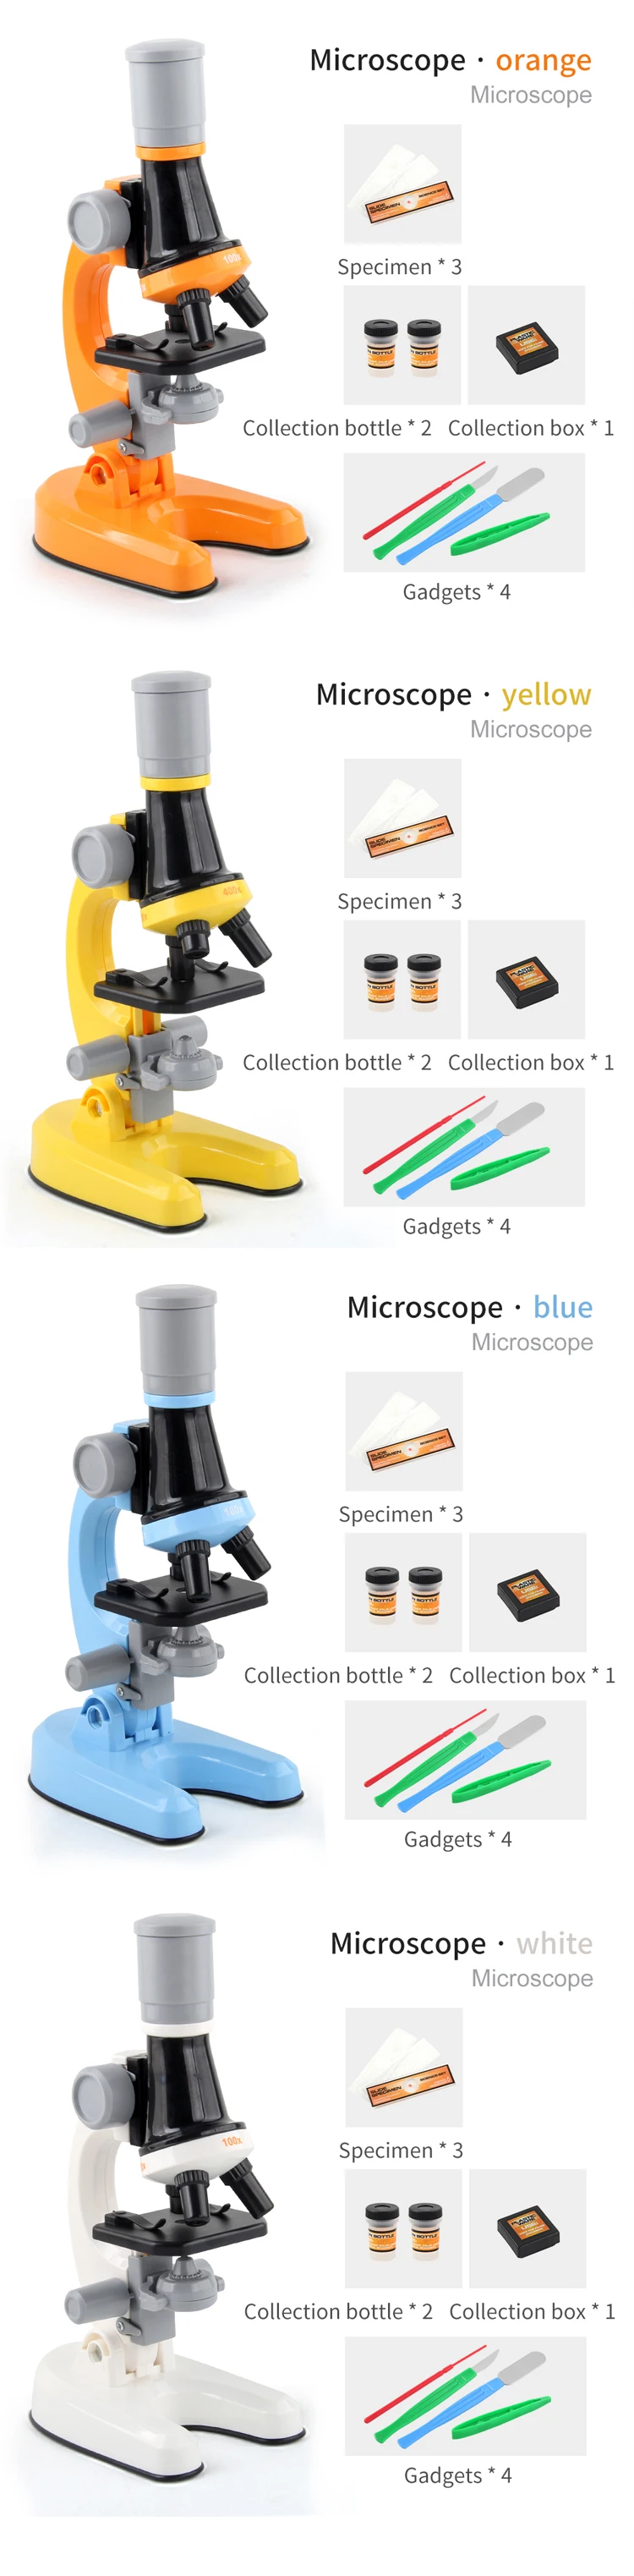 インデーホ/ 知育玩具 Microscope for Kids， Science :pd-00880490:マニアックス !店 - 通販